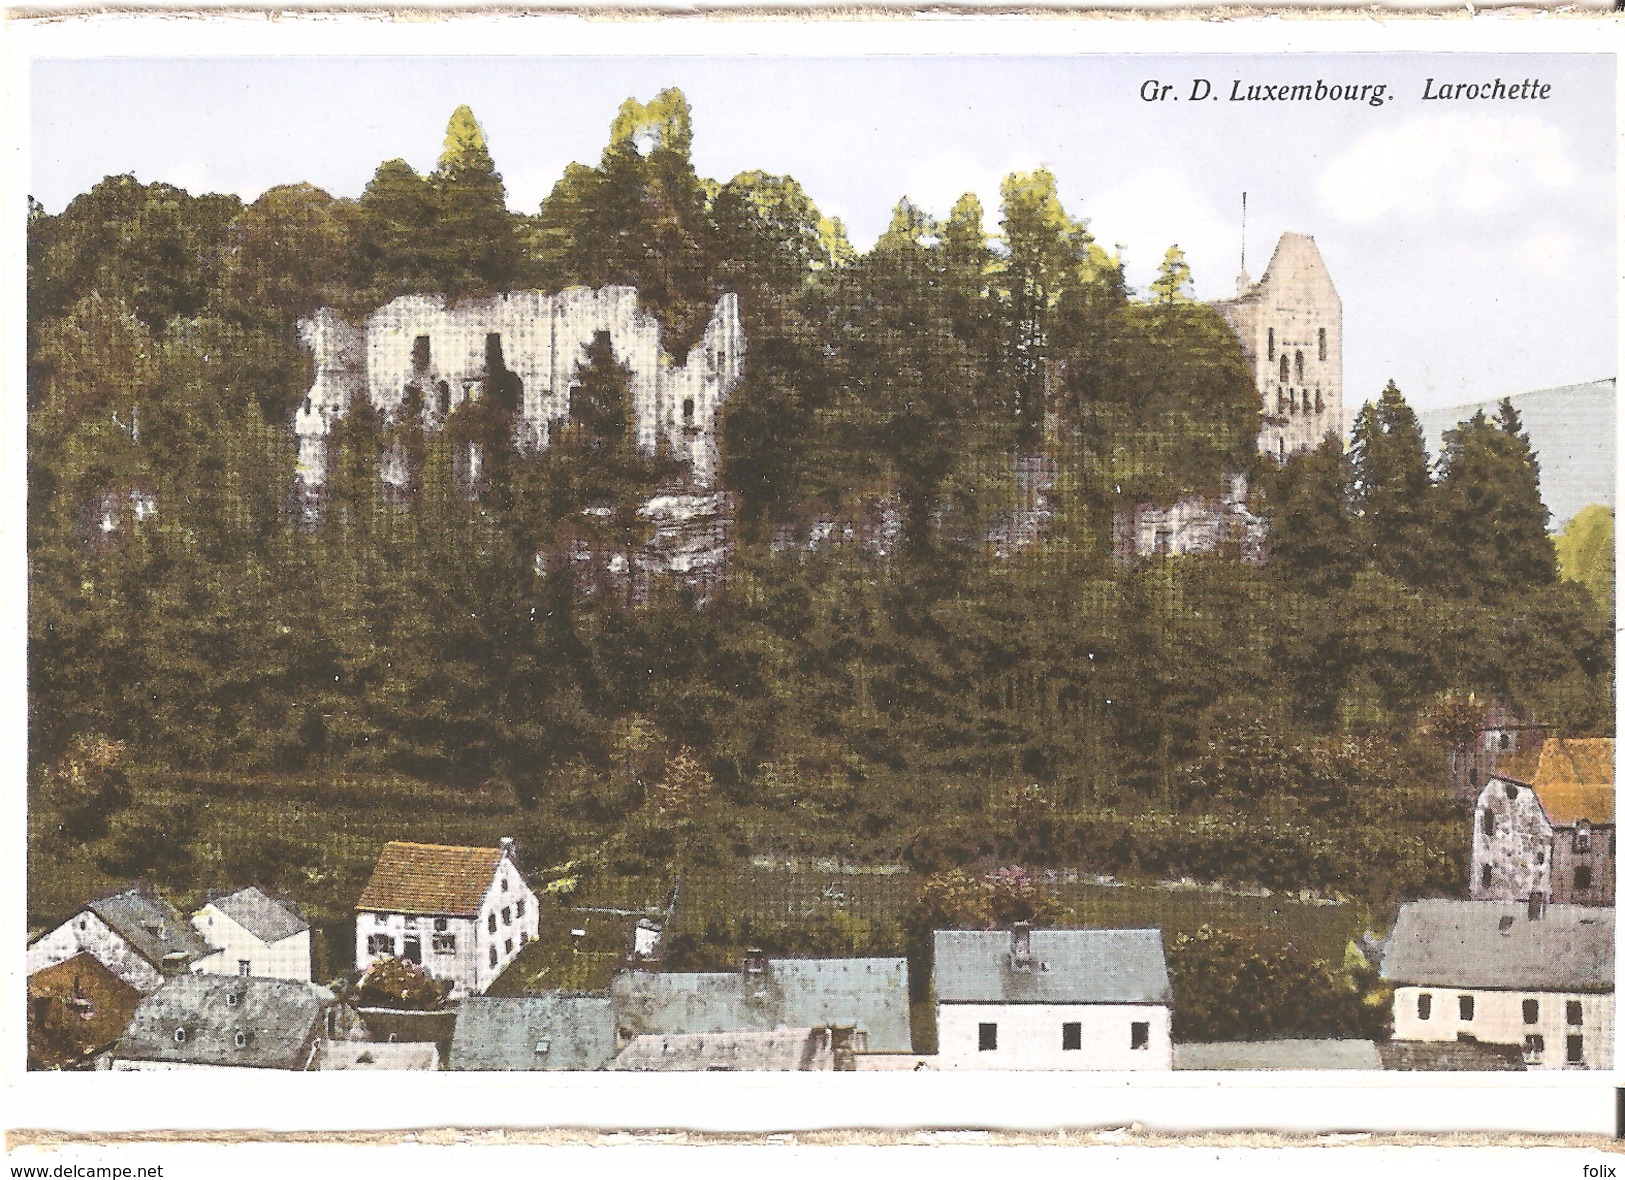 Larochette - Gr. D. Luxembourg. Larochette - Larochette